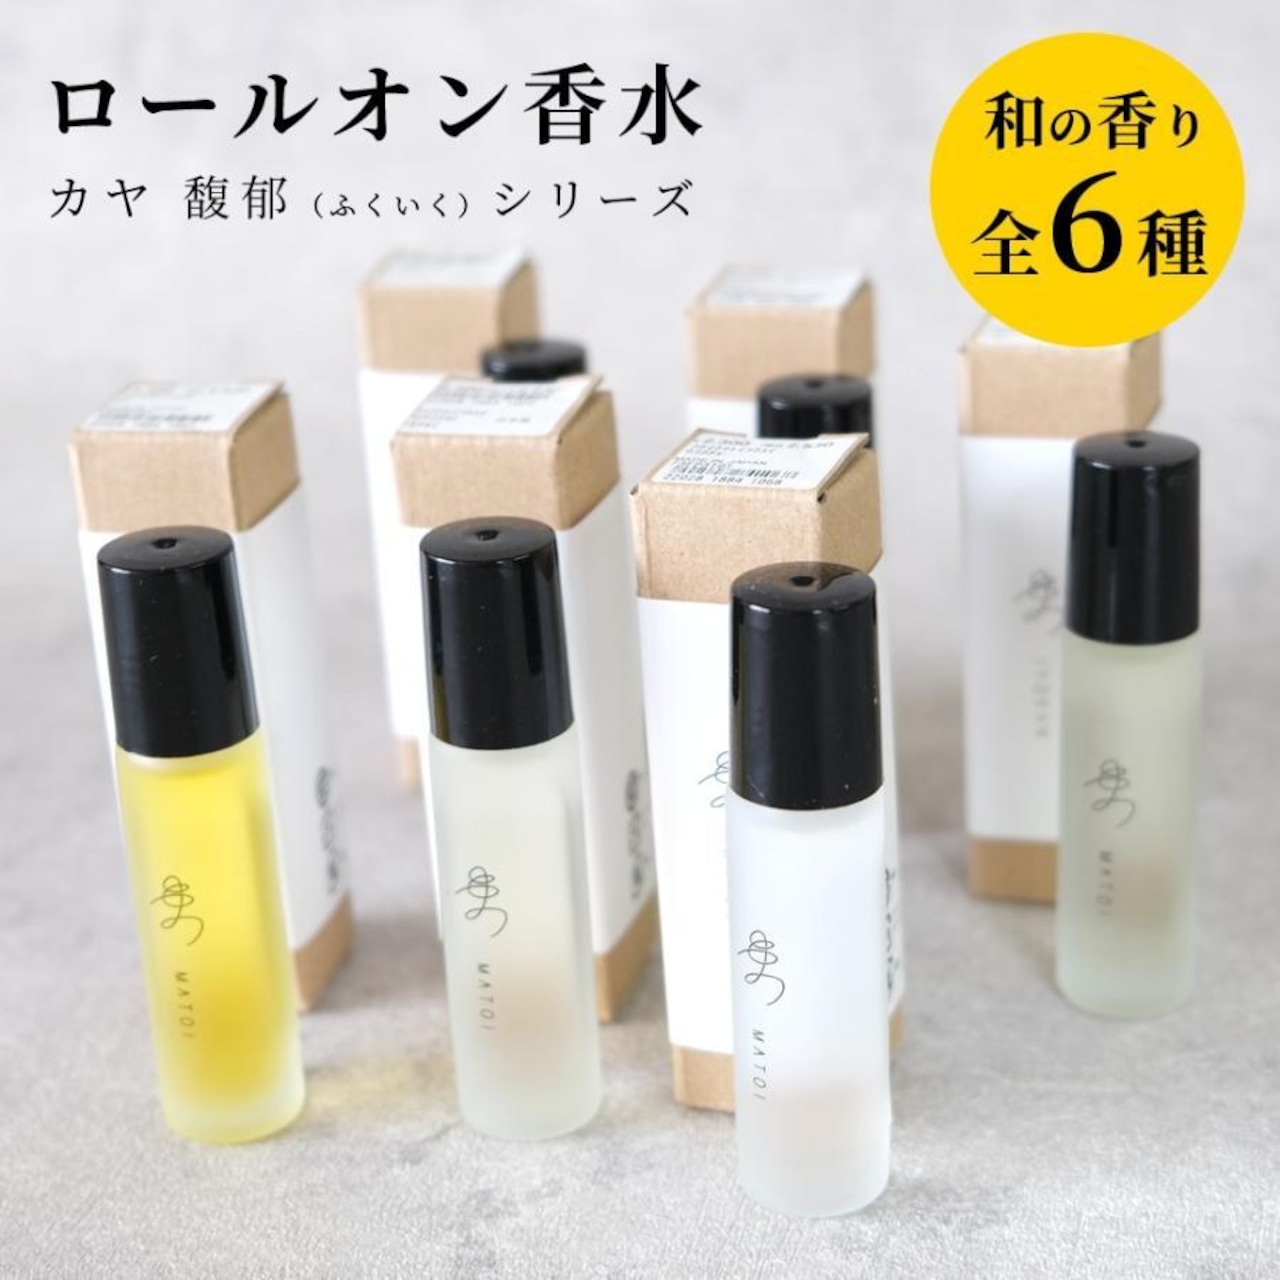 ロールオン 香水 日本製 カヤ 馥郁 まとい香水